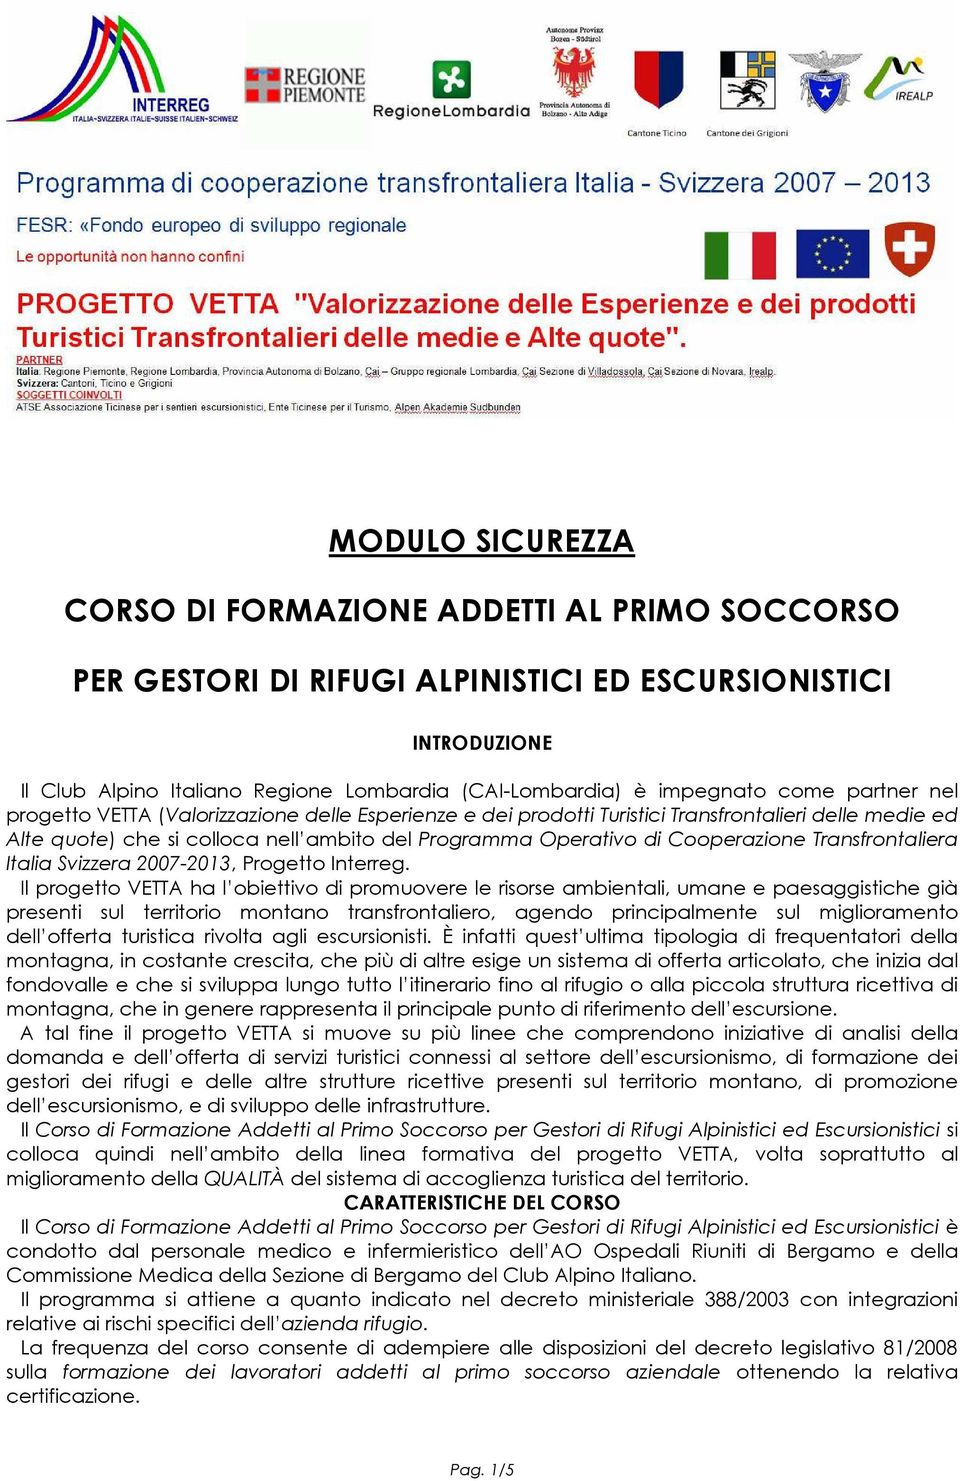 Cooperazione Transfrontaliera Italia Svizzera 2007-2013, Progetto Interreg.